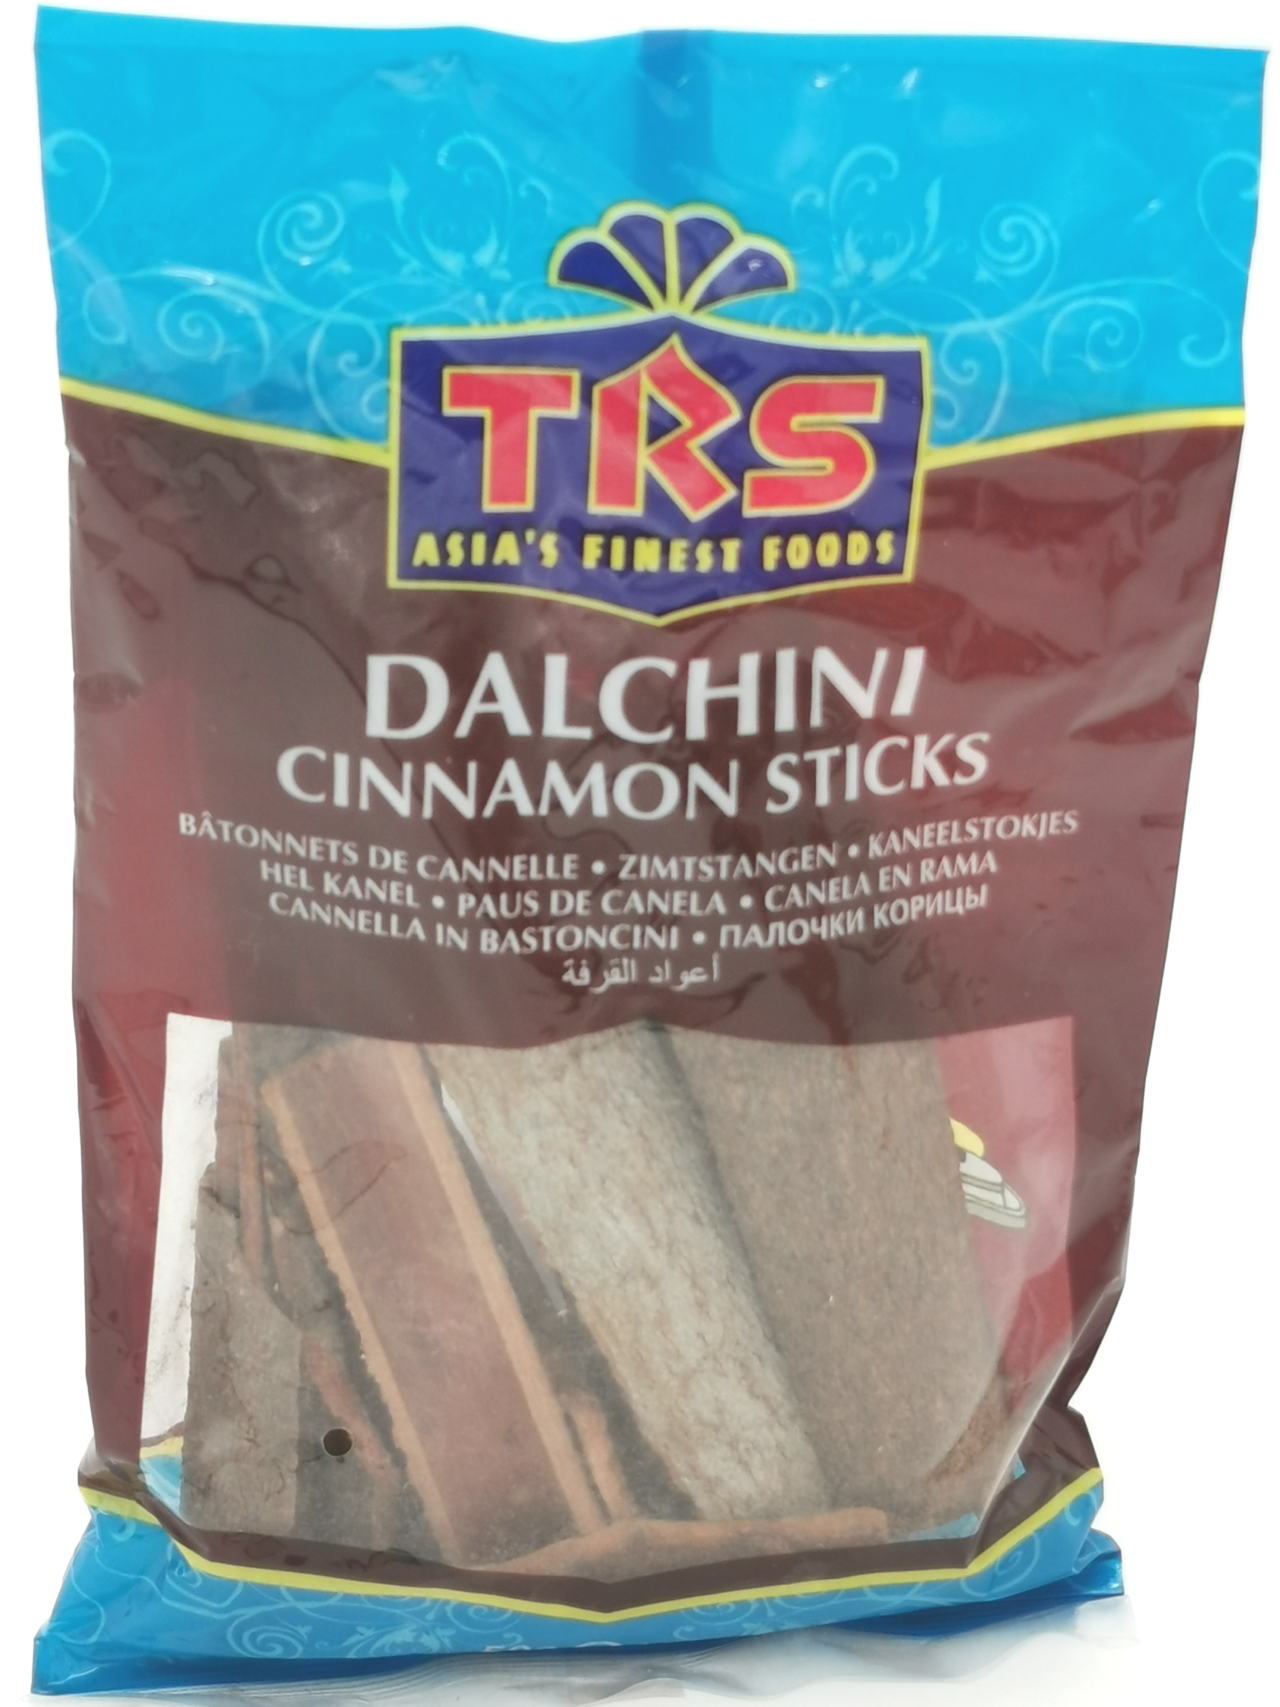 Dalchini cinnamon sticks 50g